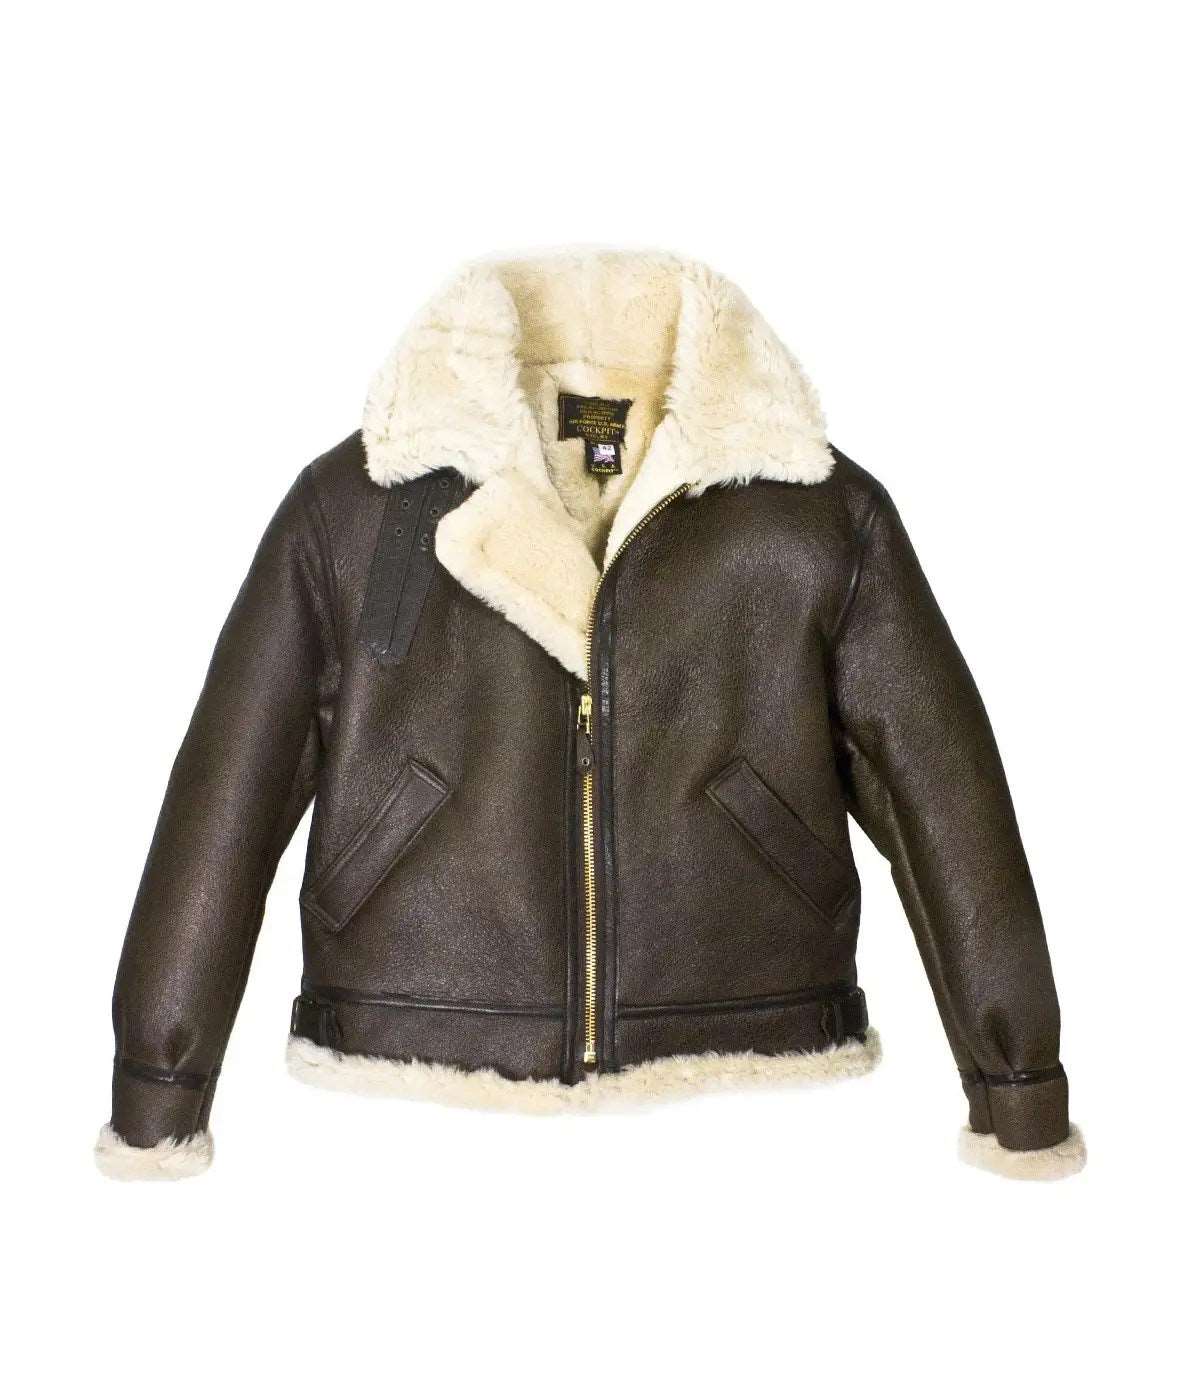 Mens Aviator Style Shearling Leather Jacket - Bomber Jacket